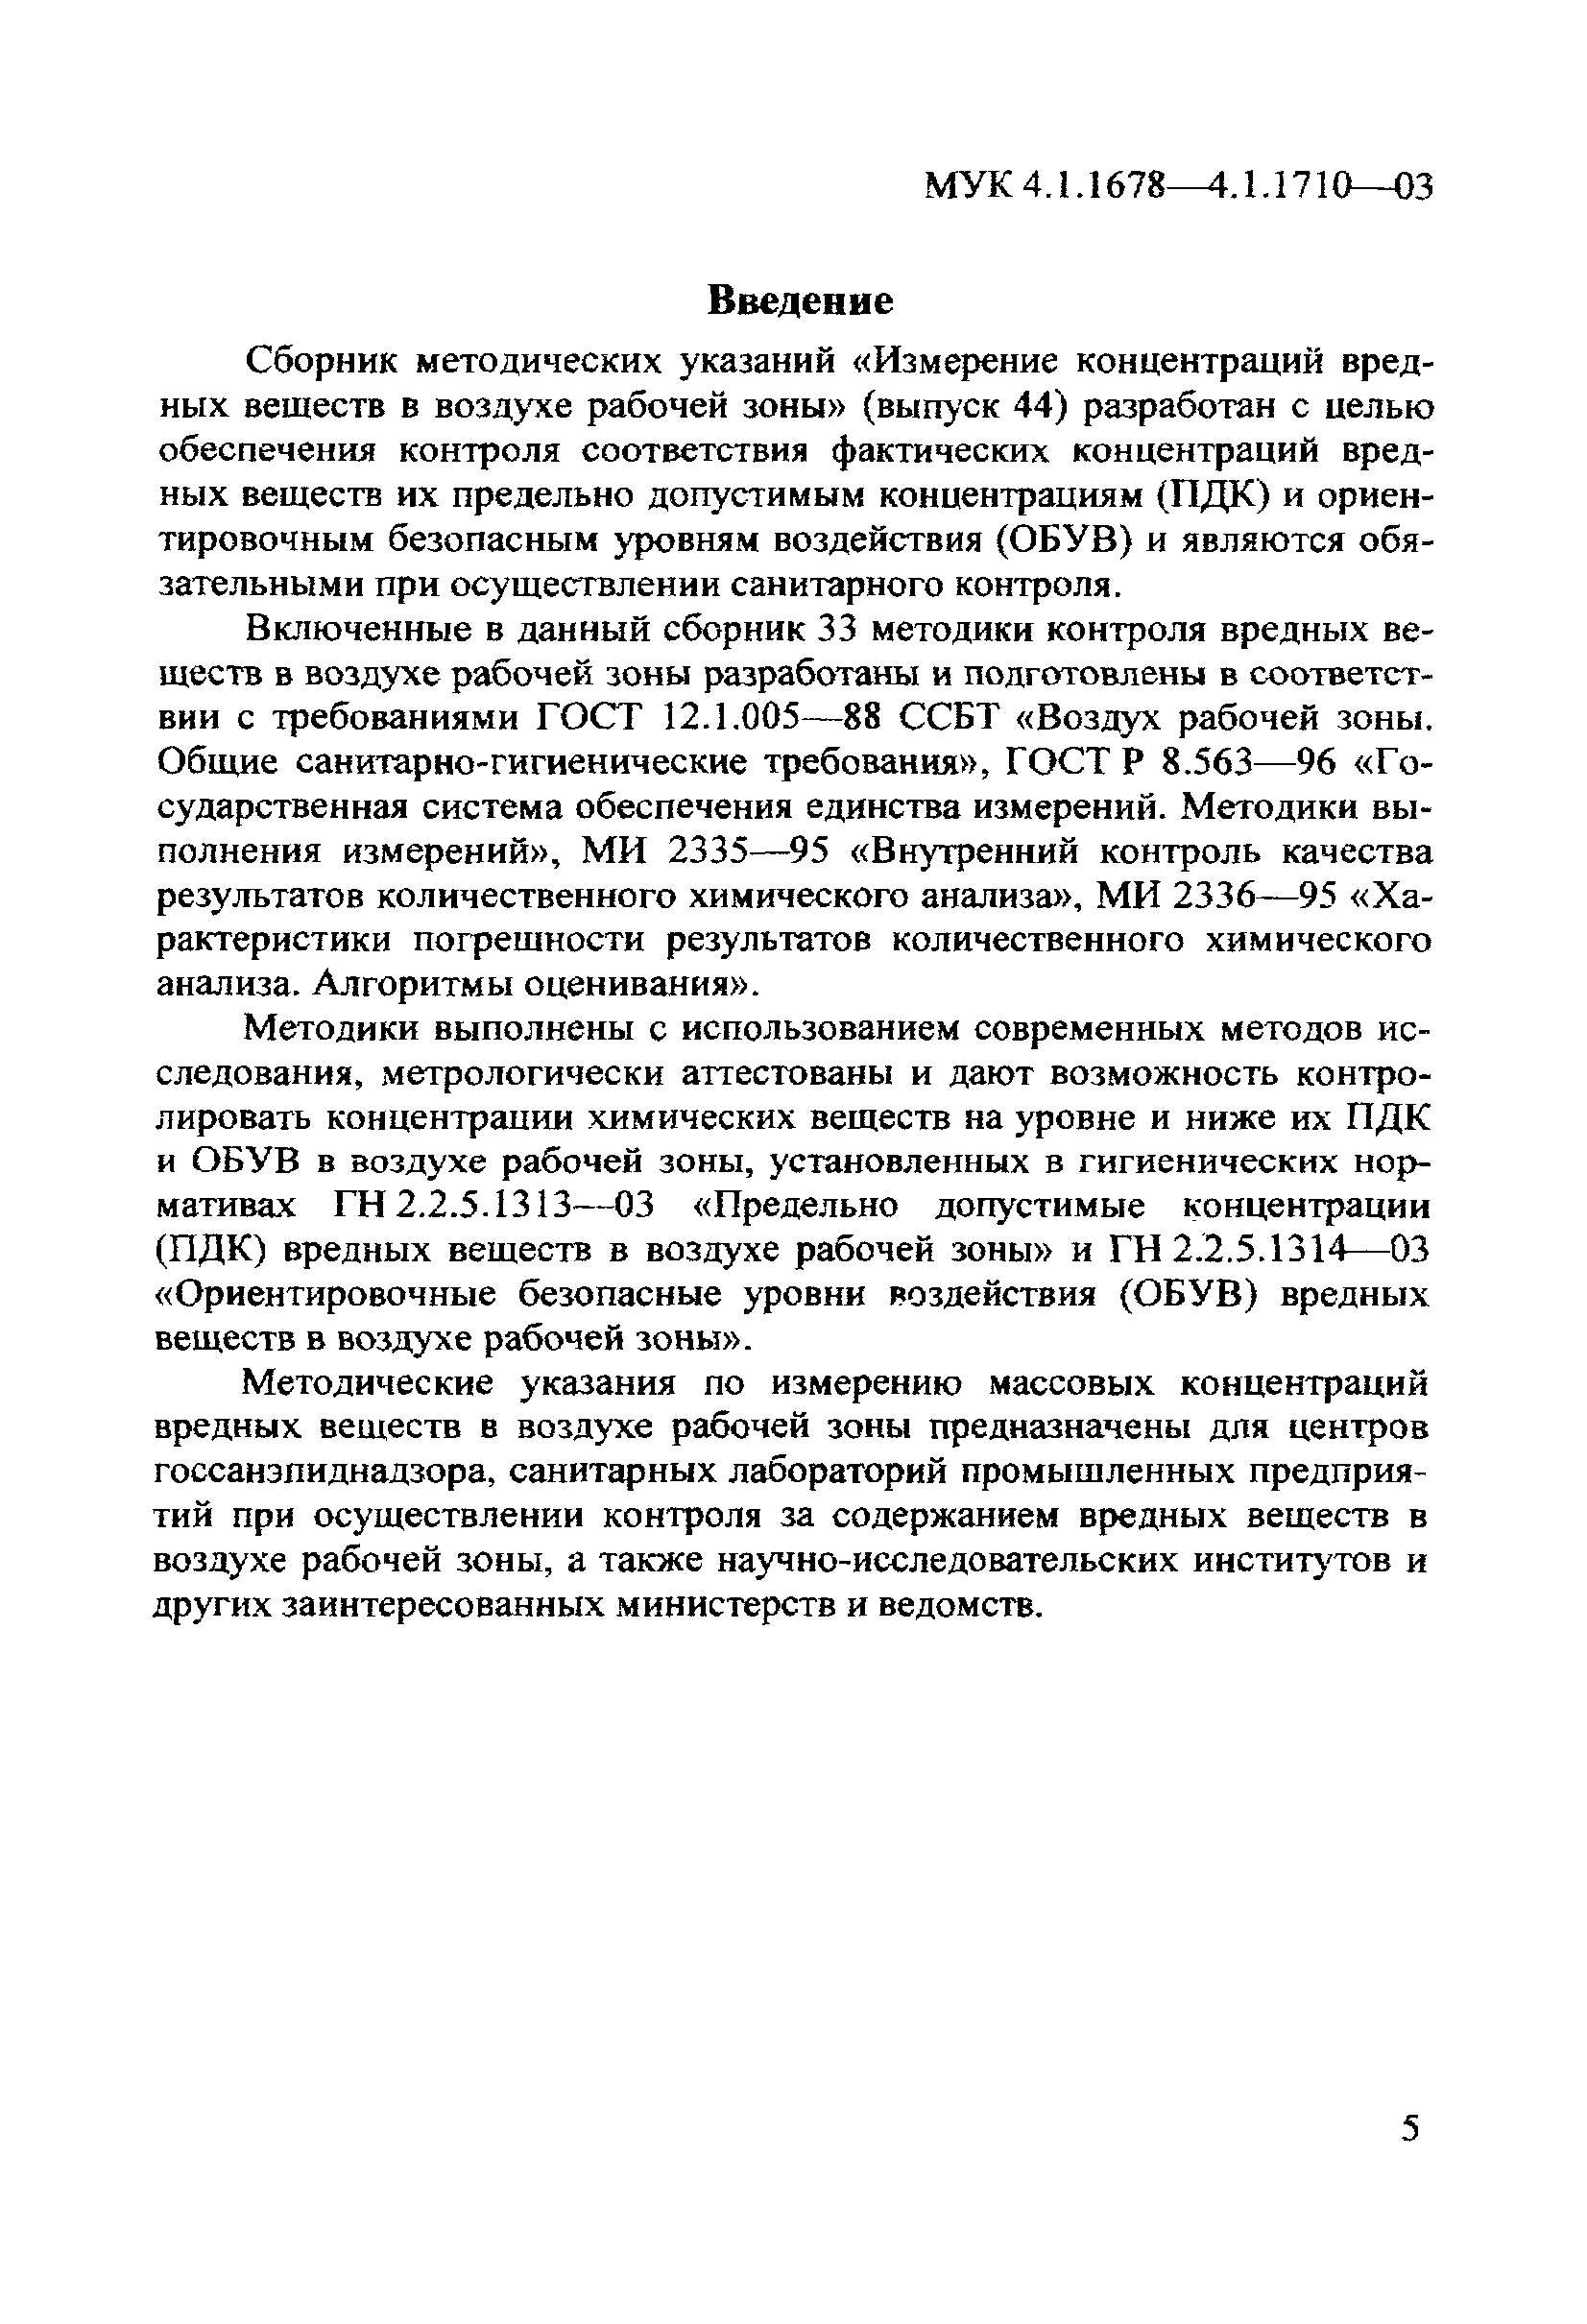 МУК 4.1.1706-03